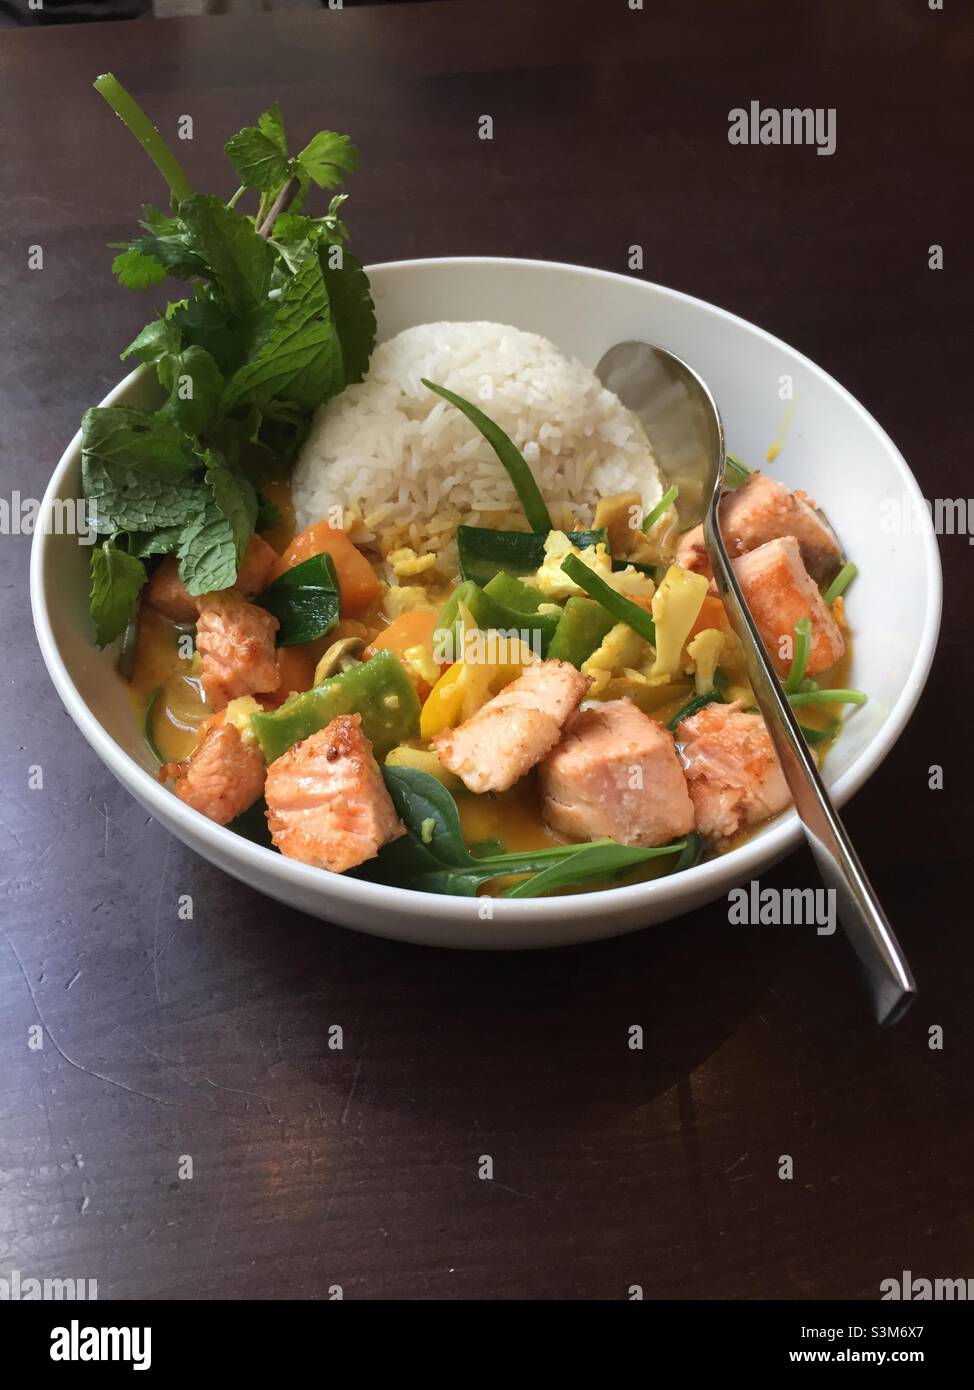 Un repas sain facile à cuire : un curry avec du saumon, des légumes, du riz, des herbes, servi dans un bol blanc avec une cuillère sur fond noir Banque D'Images